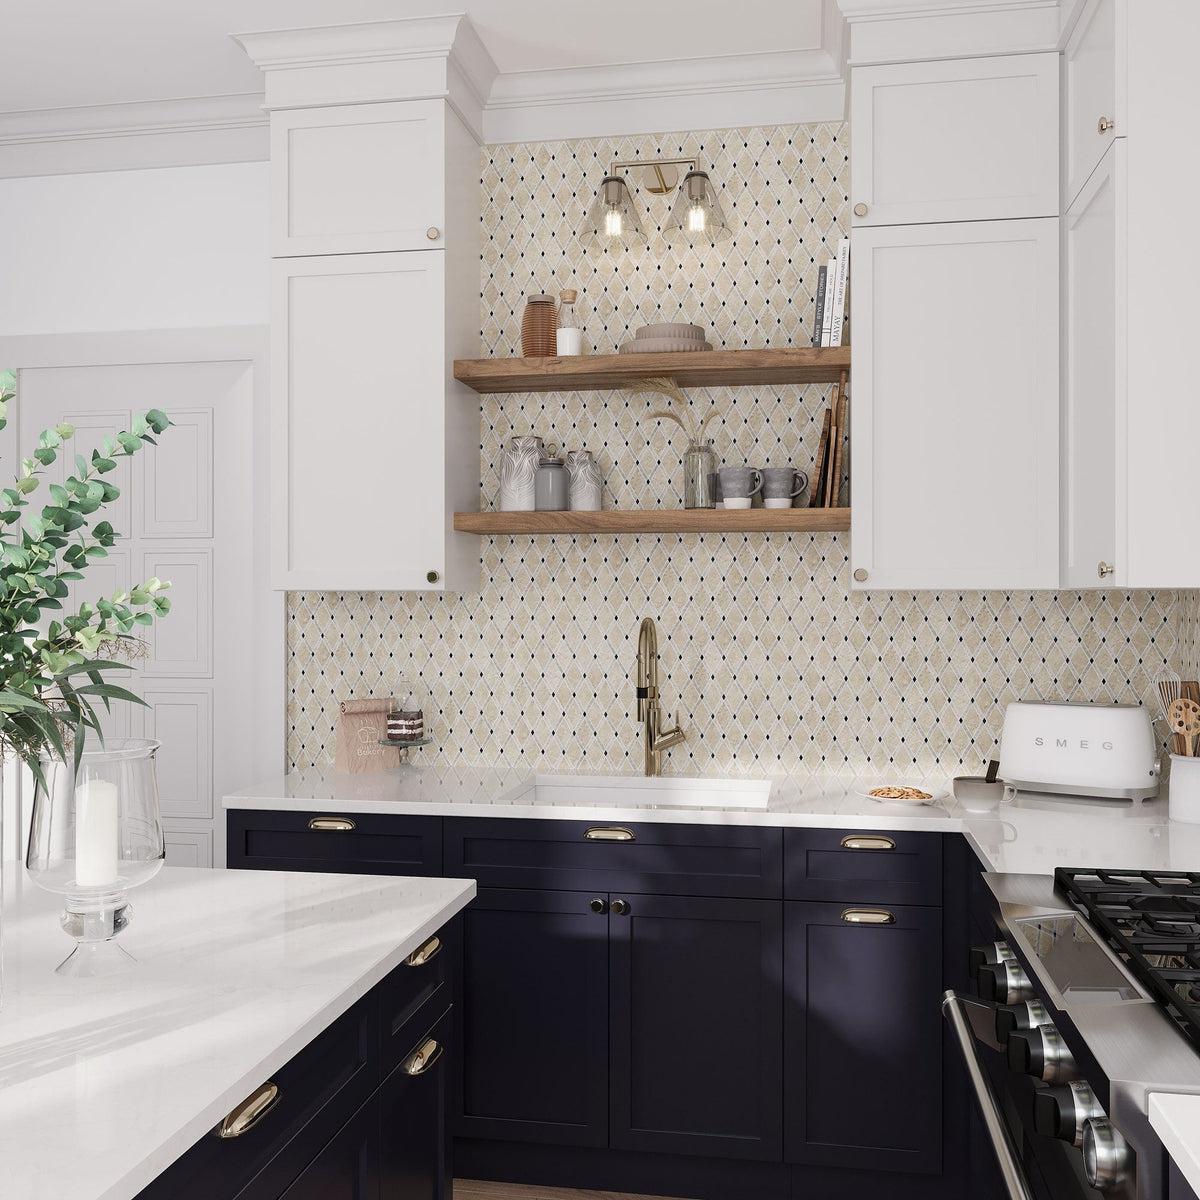 Marble tile kitchen backsplash with dark cabinets and wooden shelves